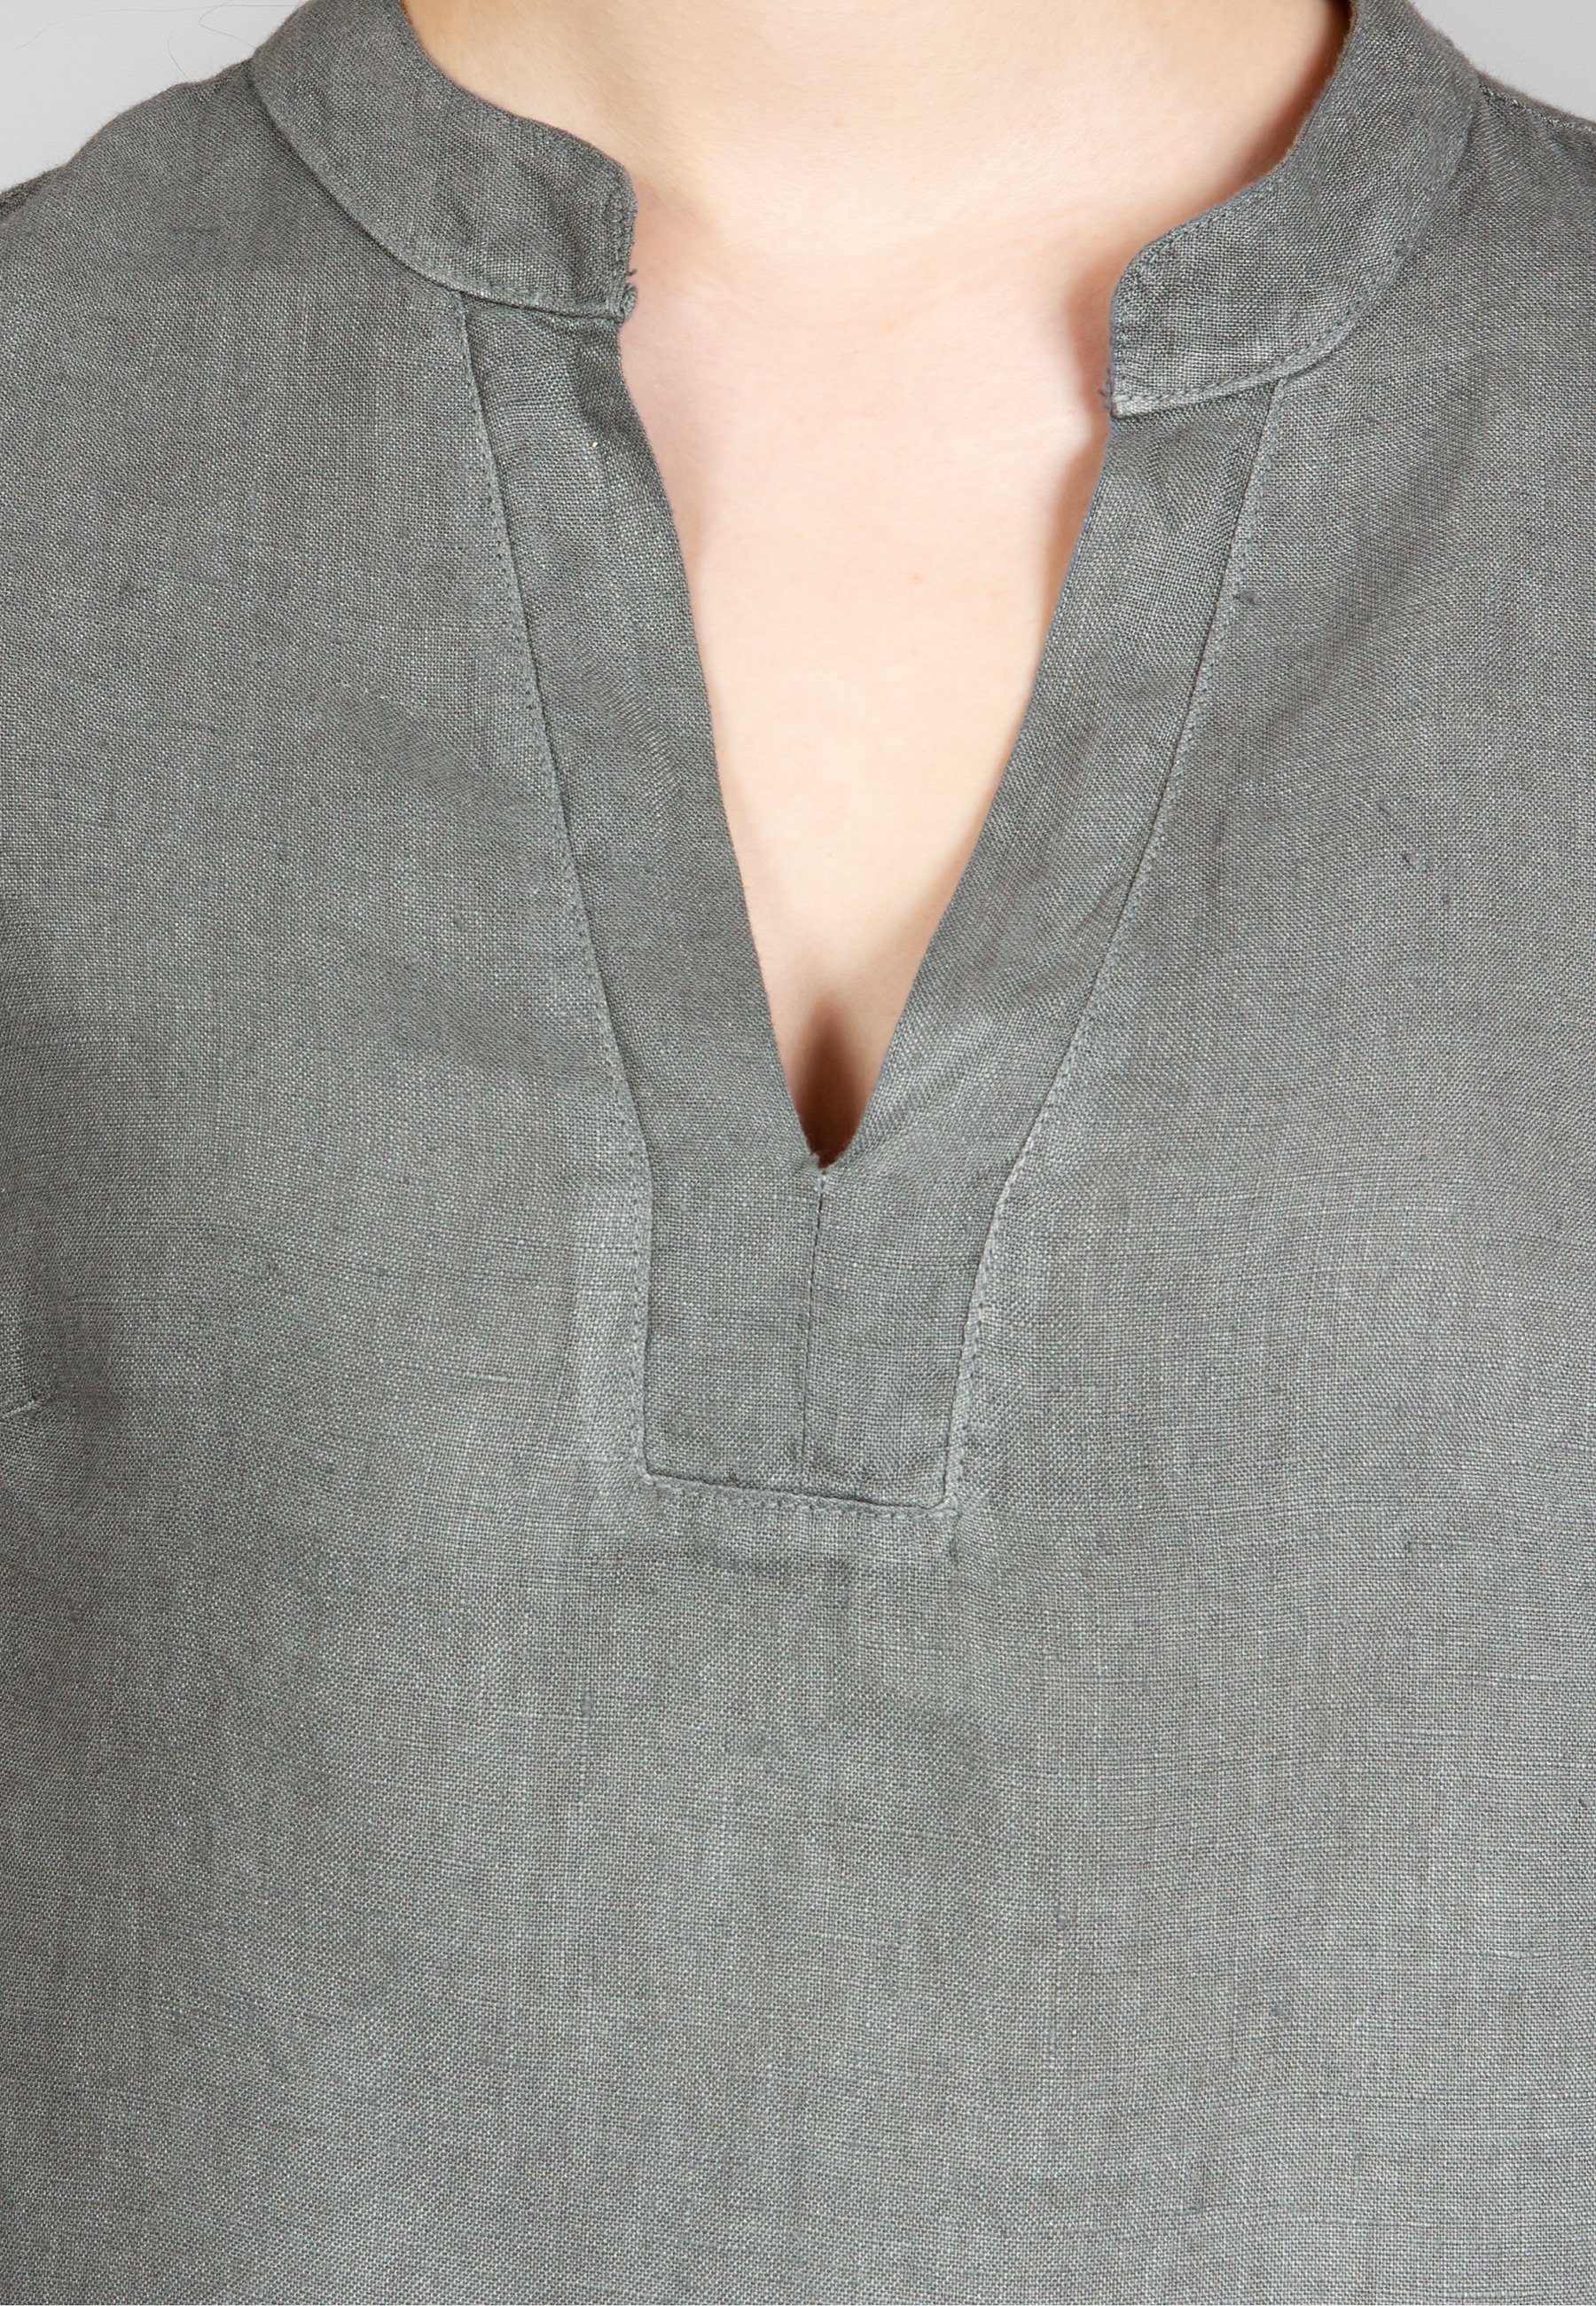 Damen Leinenbluse mit Shirtbluse Halbarm elegante stylischem Caspar grau BLU024 V-Ausschnitt Sommer